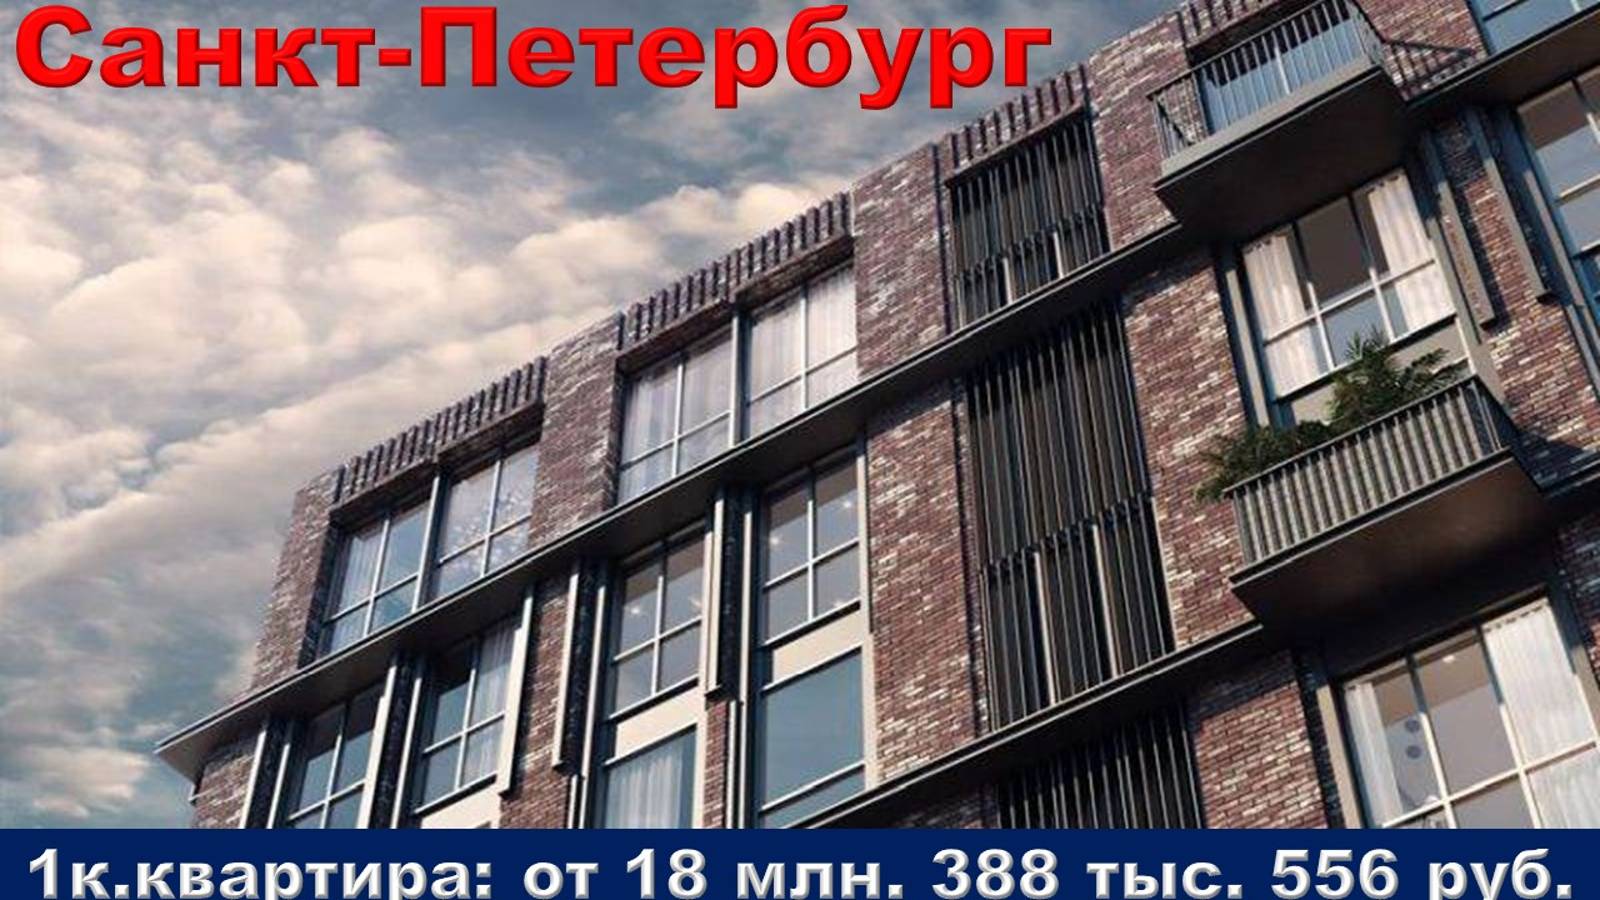 Санкт-Петербург. 1к. квартира от 18 млн. 388 тыс. 556 руб.